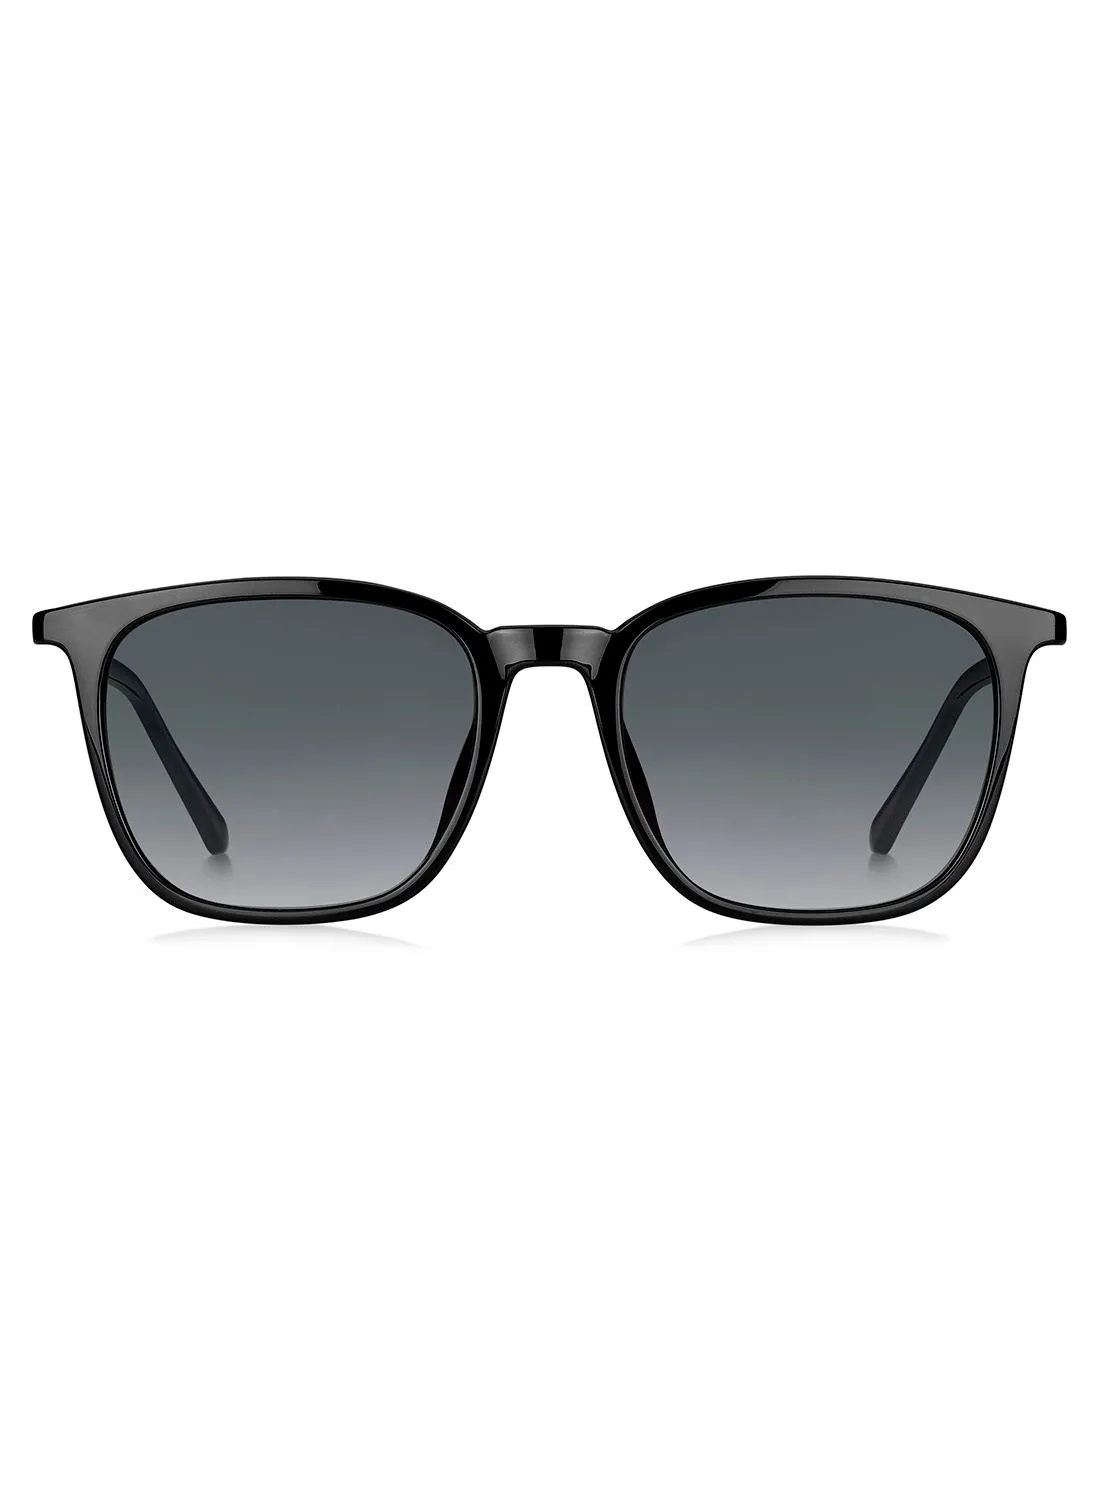 فوسيل نظارة شمسية مربعة للرجال FOS 3091 / S 807